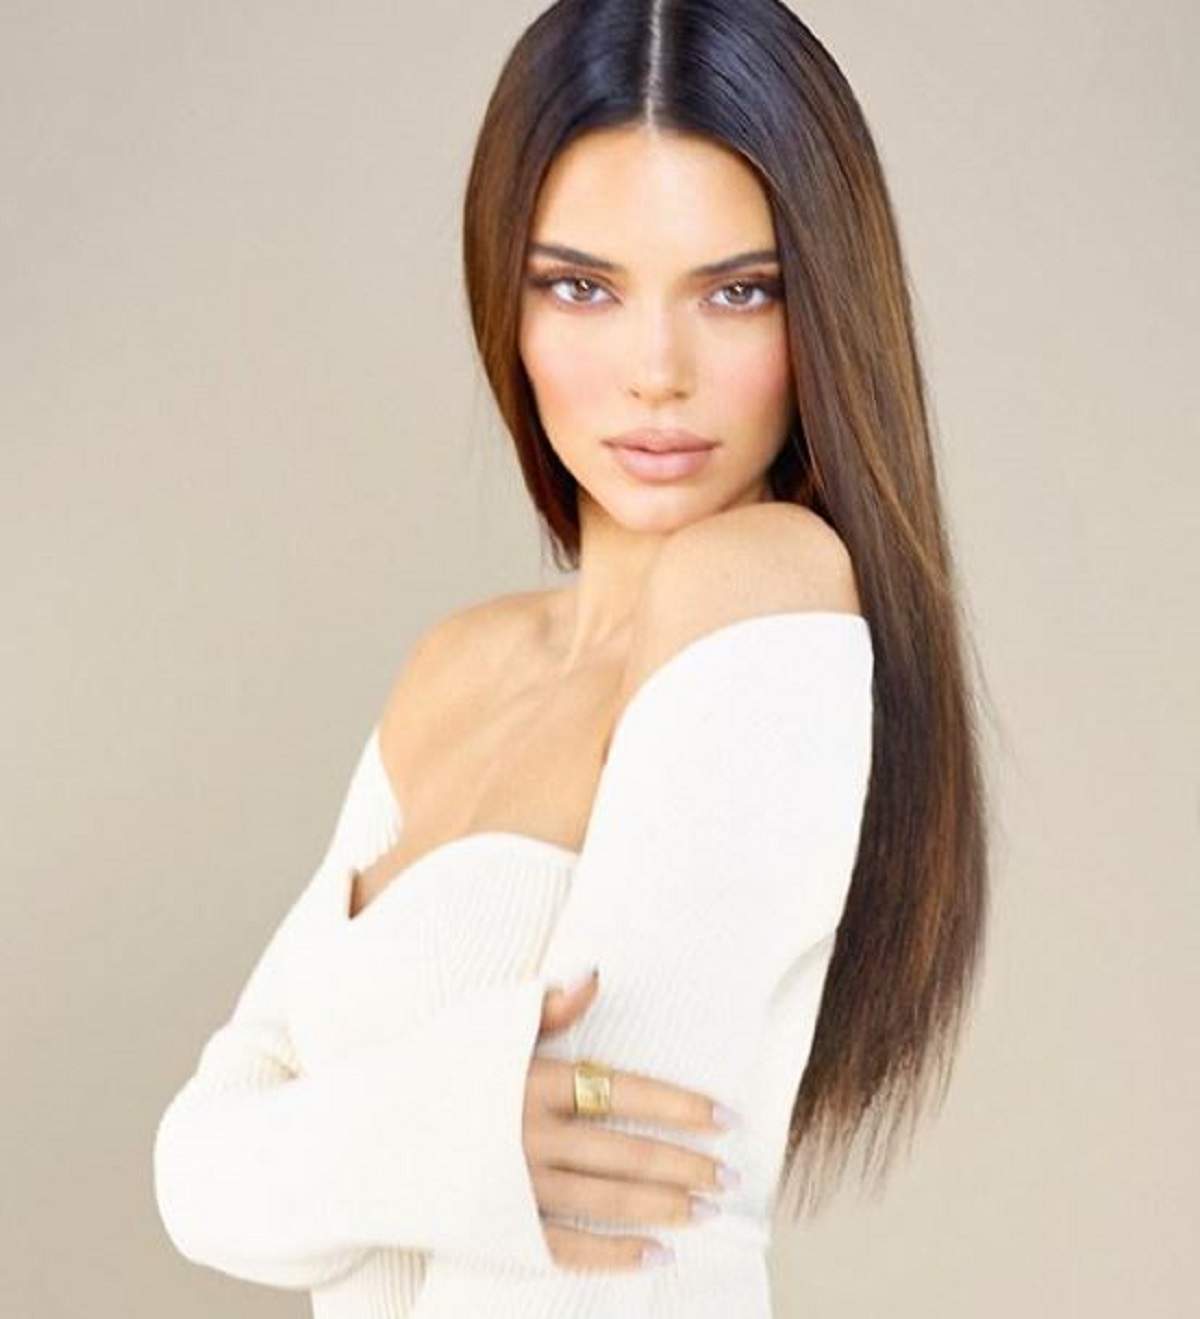 Kendall Jenner într-un shooting foto, modelul poartă o bluză albă fără umeri și are părul desprins, ăși ține brațele strânse